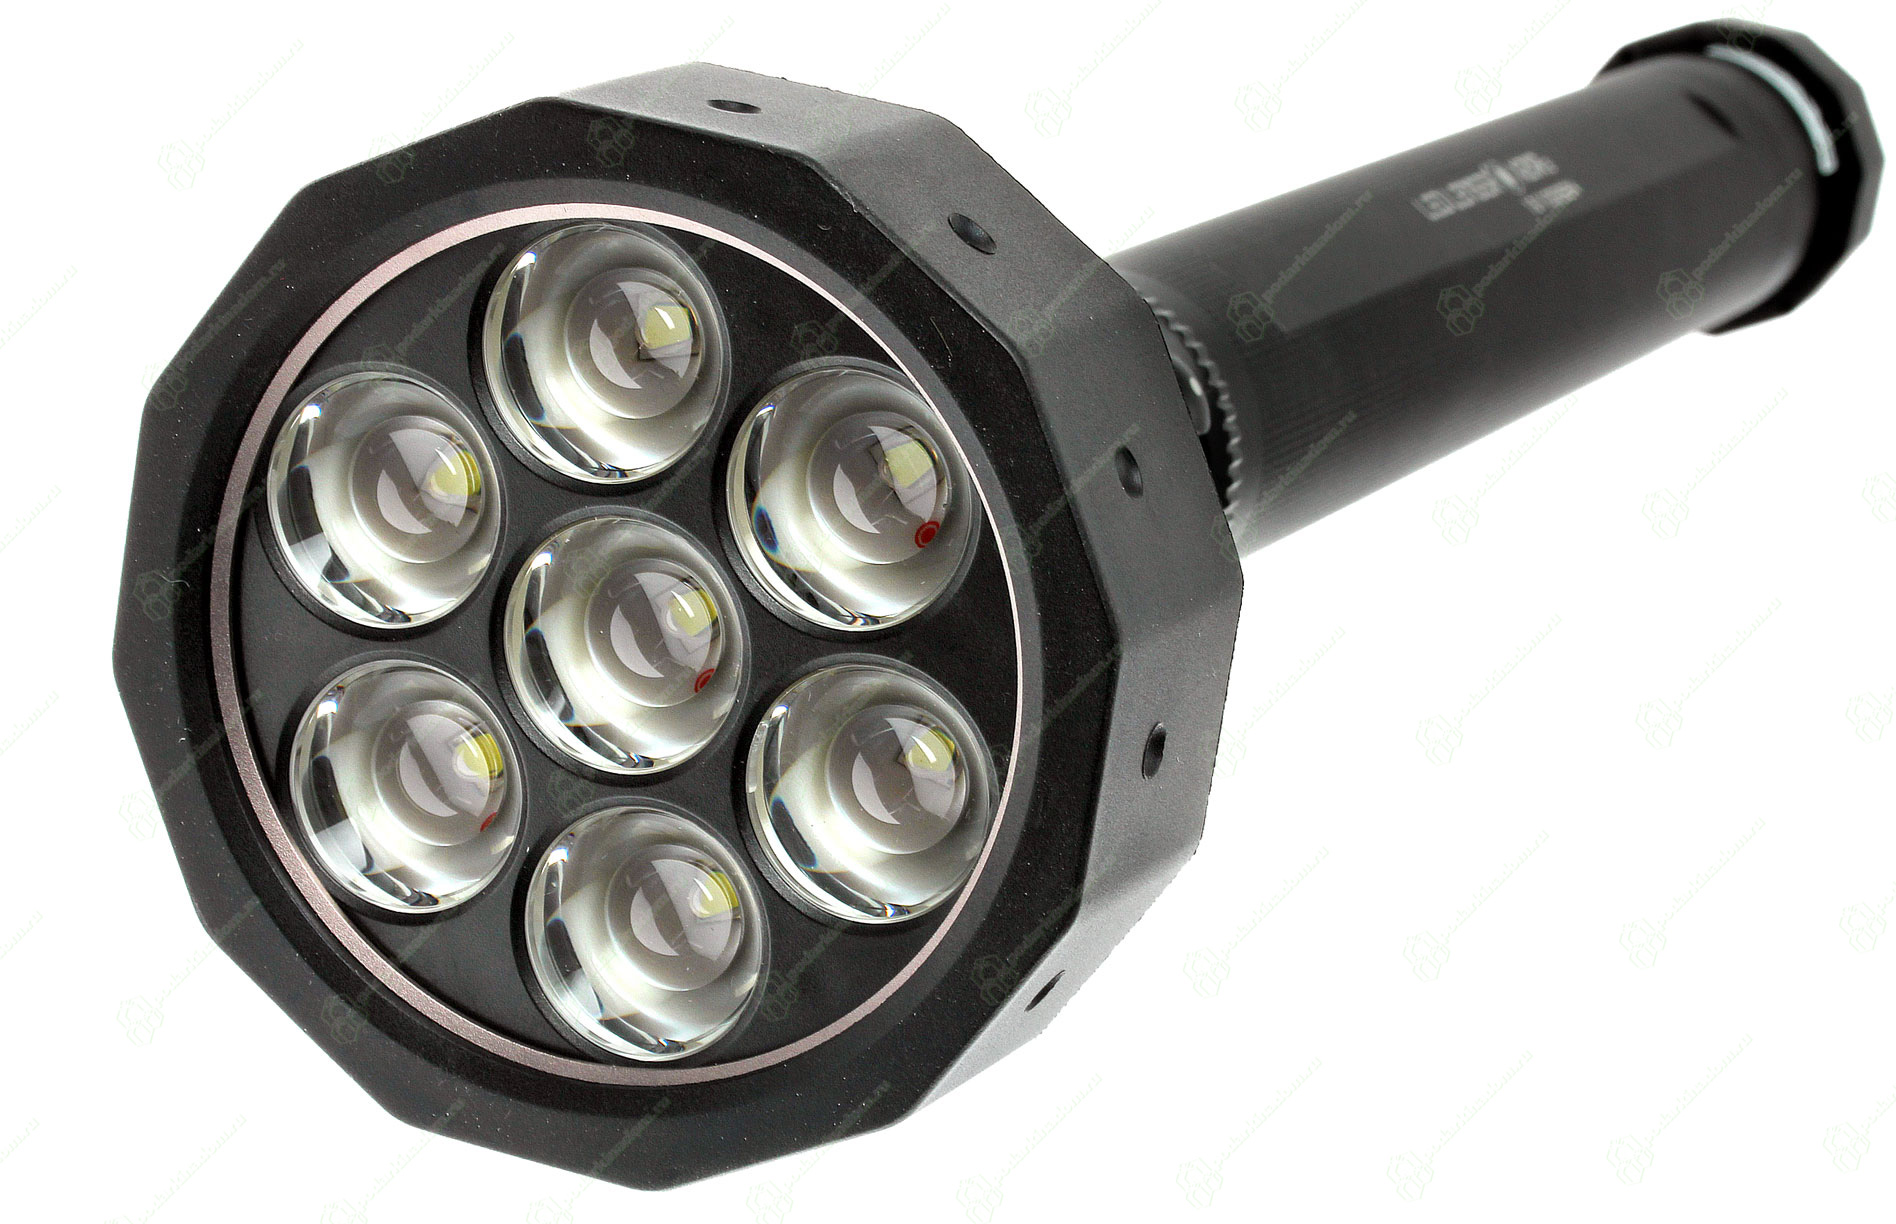 LED Lenser X21R.2